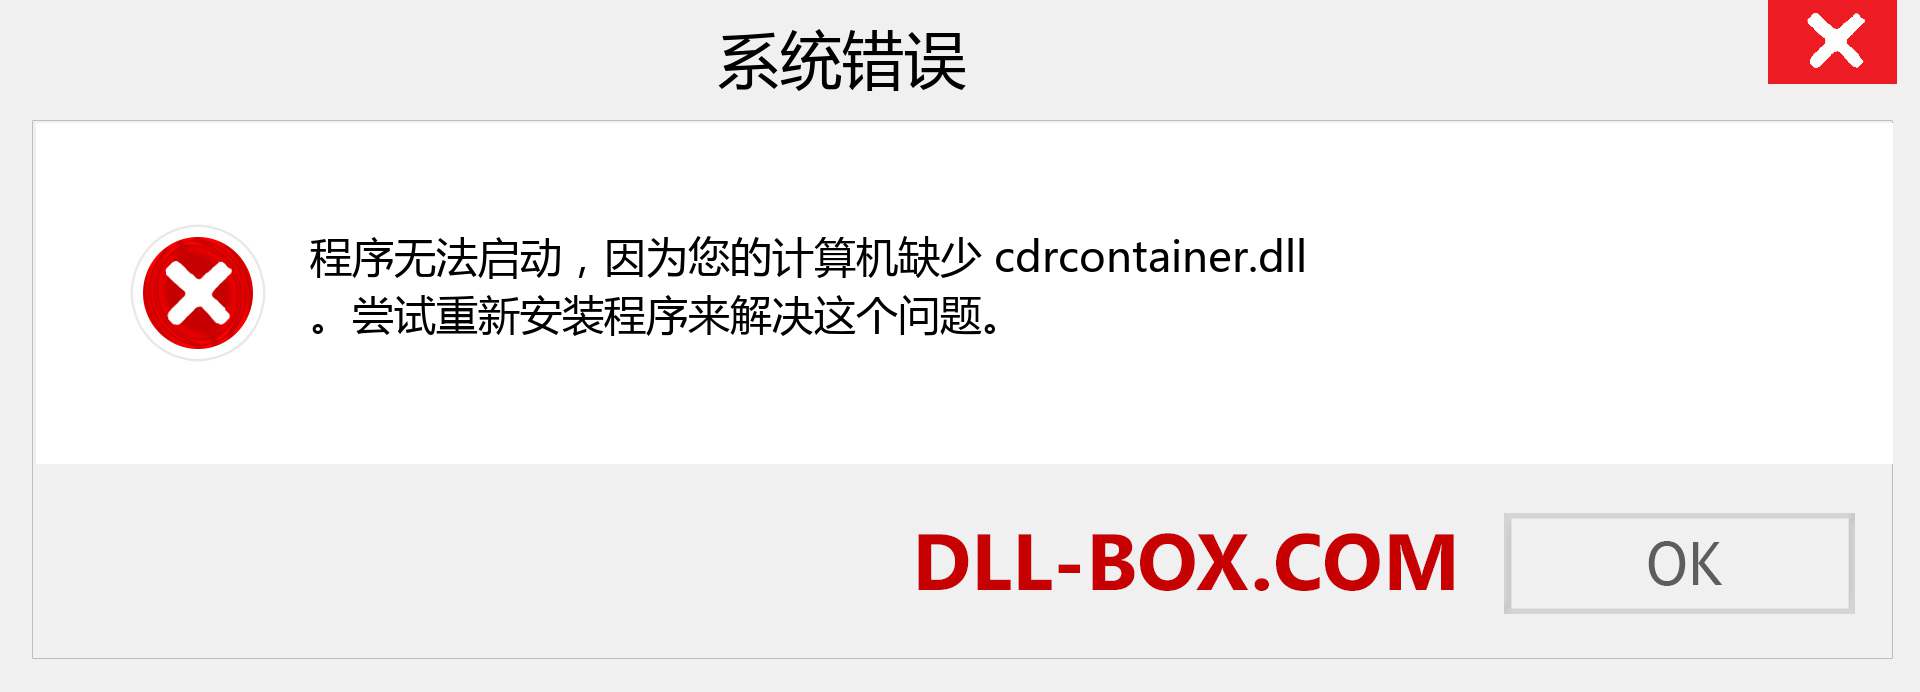 cdrcontainer.dll 文件丢失？。 适用于 Windows 7、8、10 的下载 - 修复 Windows、照片、图像上的 cdrcontainer dll 丢失错误